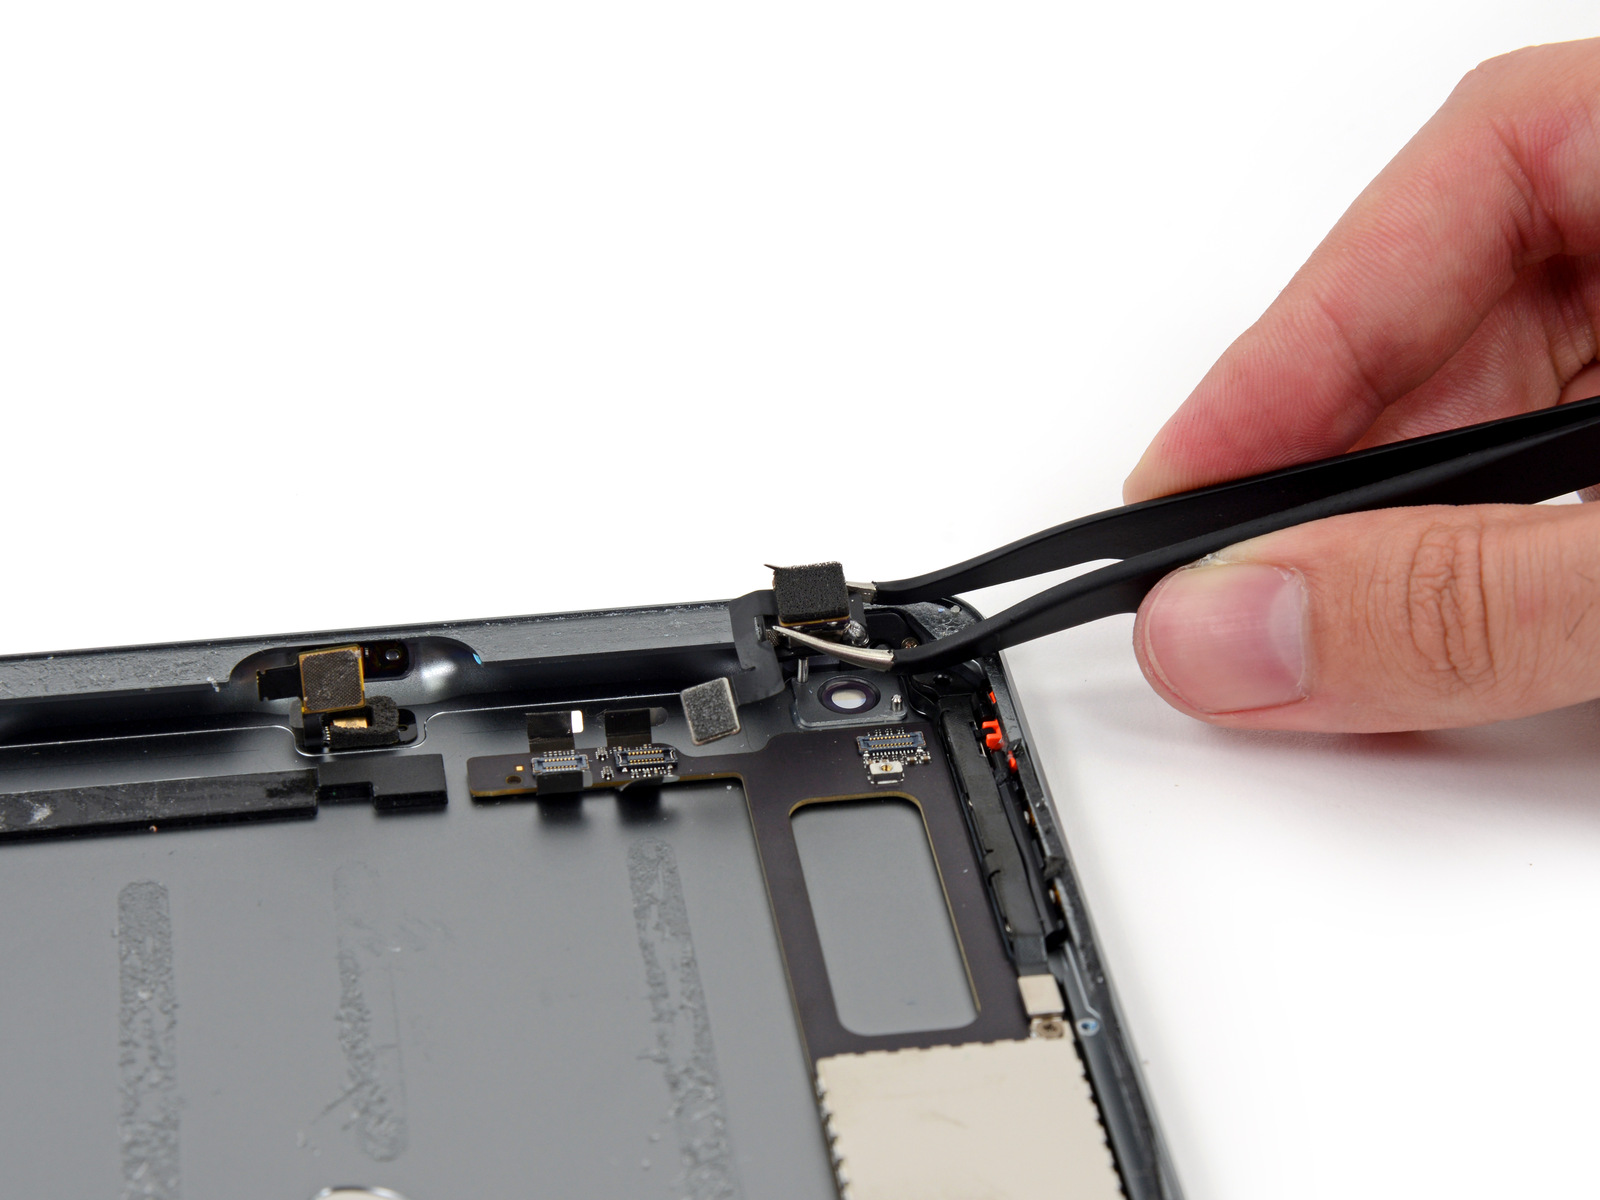 Desmontagem do iPad mini de segunda geração - iFixit